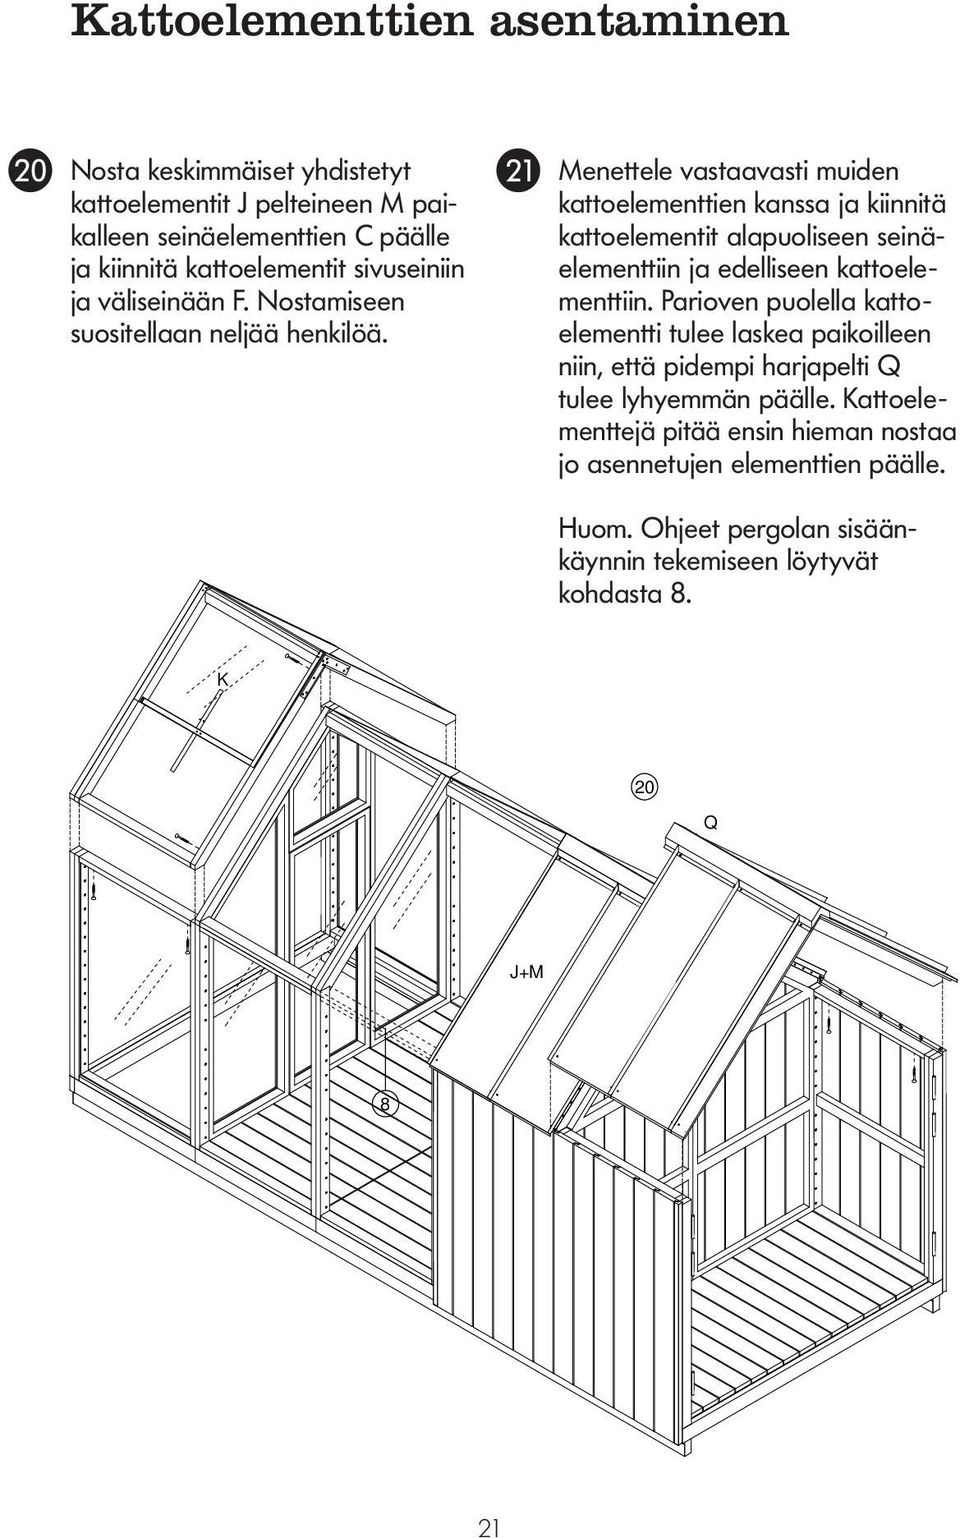 KATTOELEMENTTIEN ASENTAMINEN Menettele vastaavasti muiden katto elementtien kanssa ja kiinnitä kattoelementit alapuoliseen seinä - elementtiin ja edelliseen kattoelementtiin.